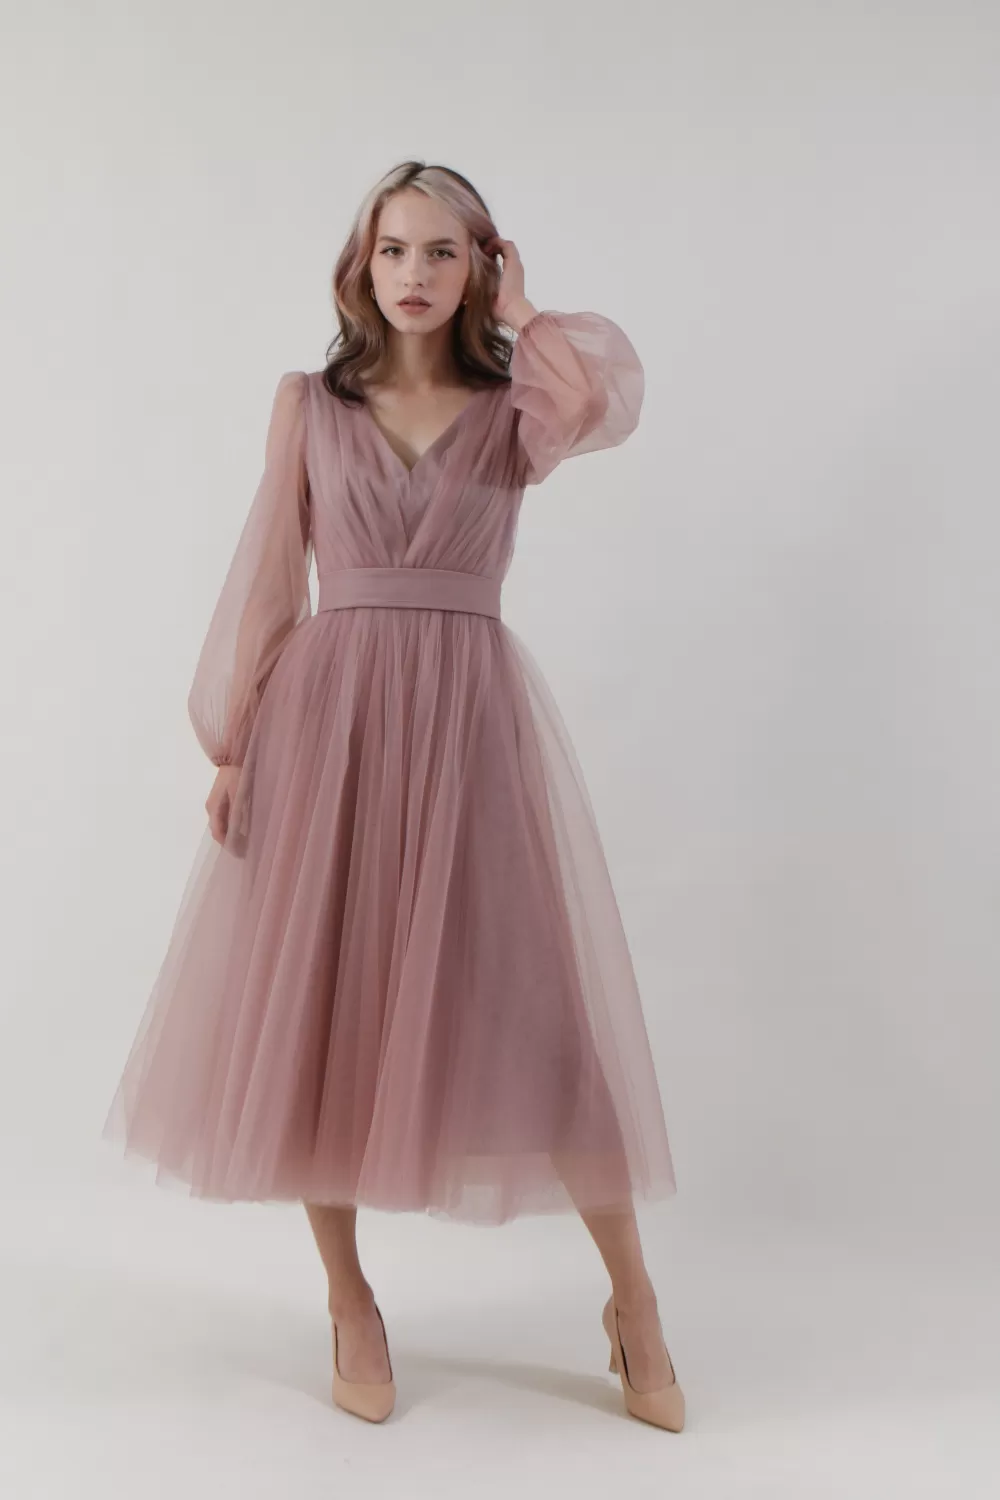  Где можно купить красивые короткие летние платья в Москве недорого? 50platev